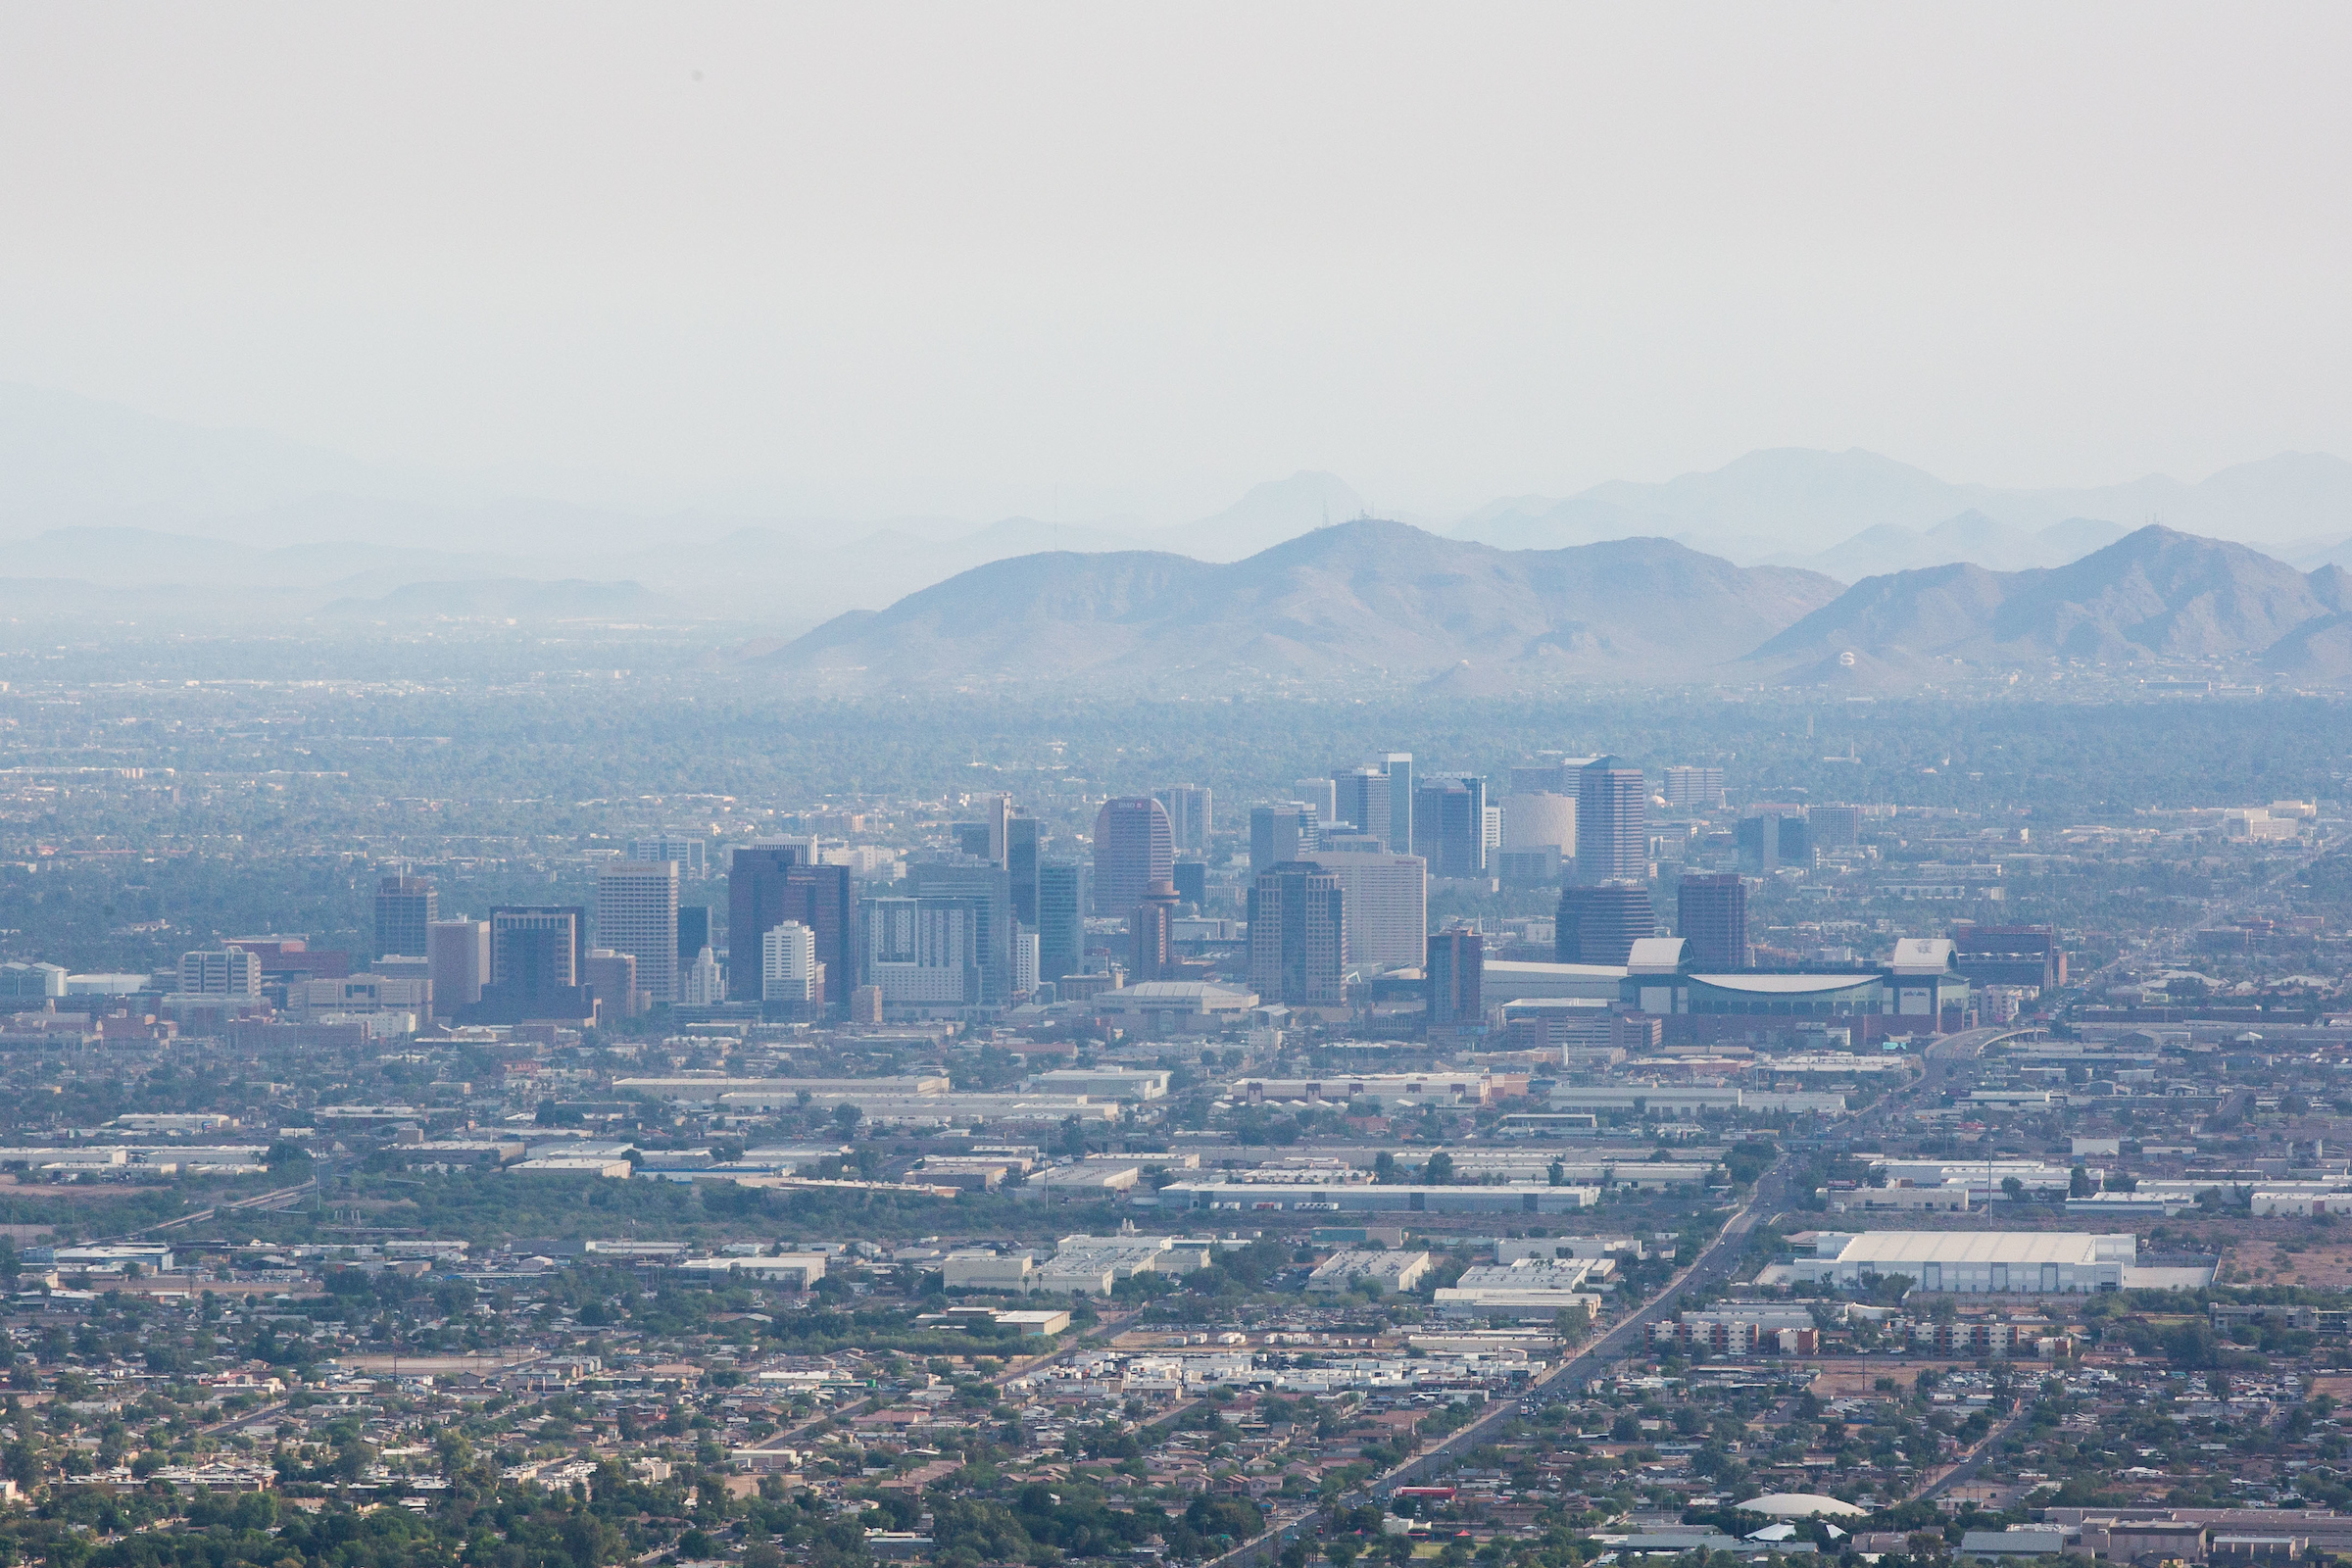 View of downtown Phoenix skyline